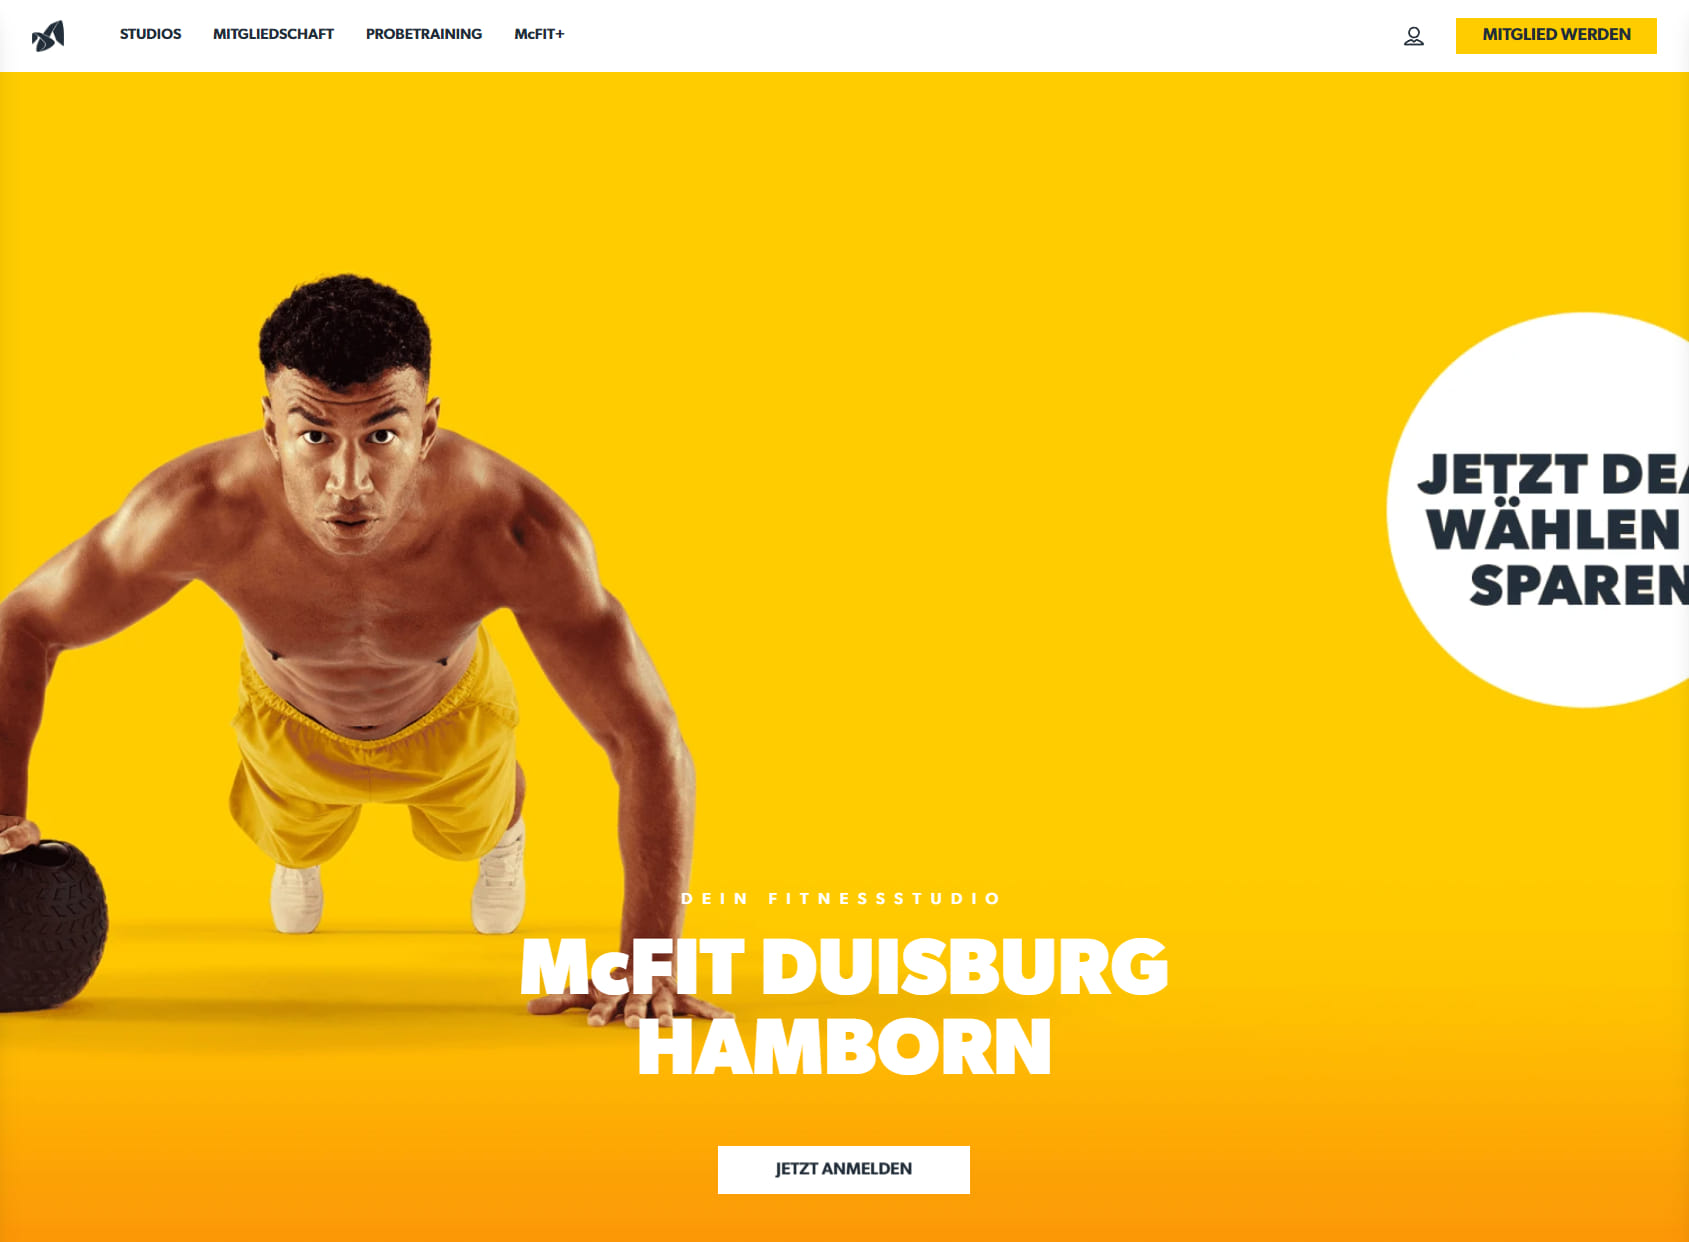 McFit gym Duisburg Hamborn